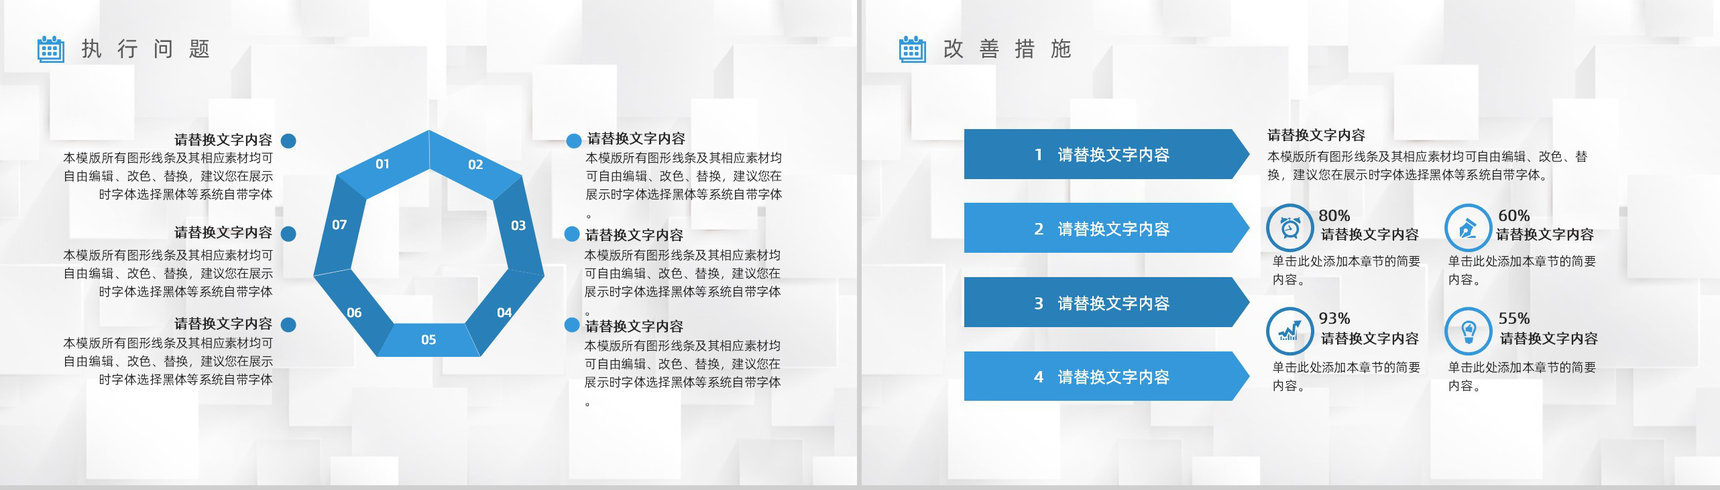 中国农业银行工作总结数据报告PPT模板-10